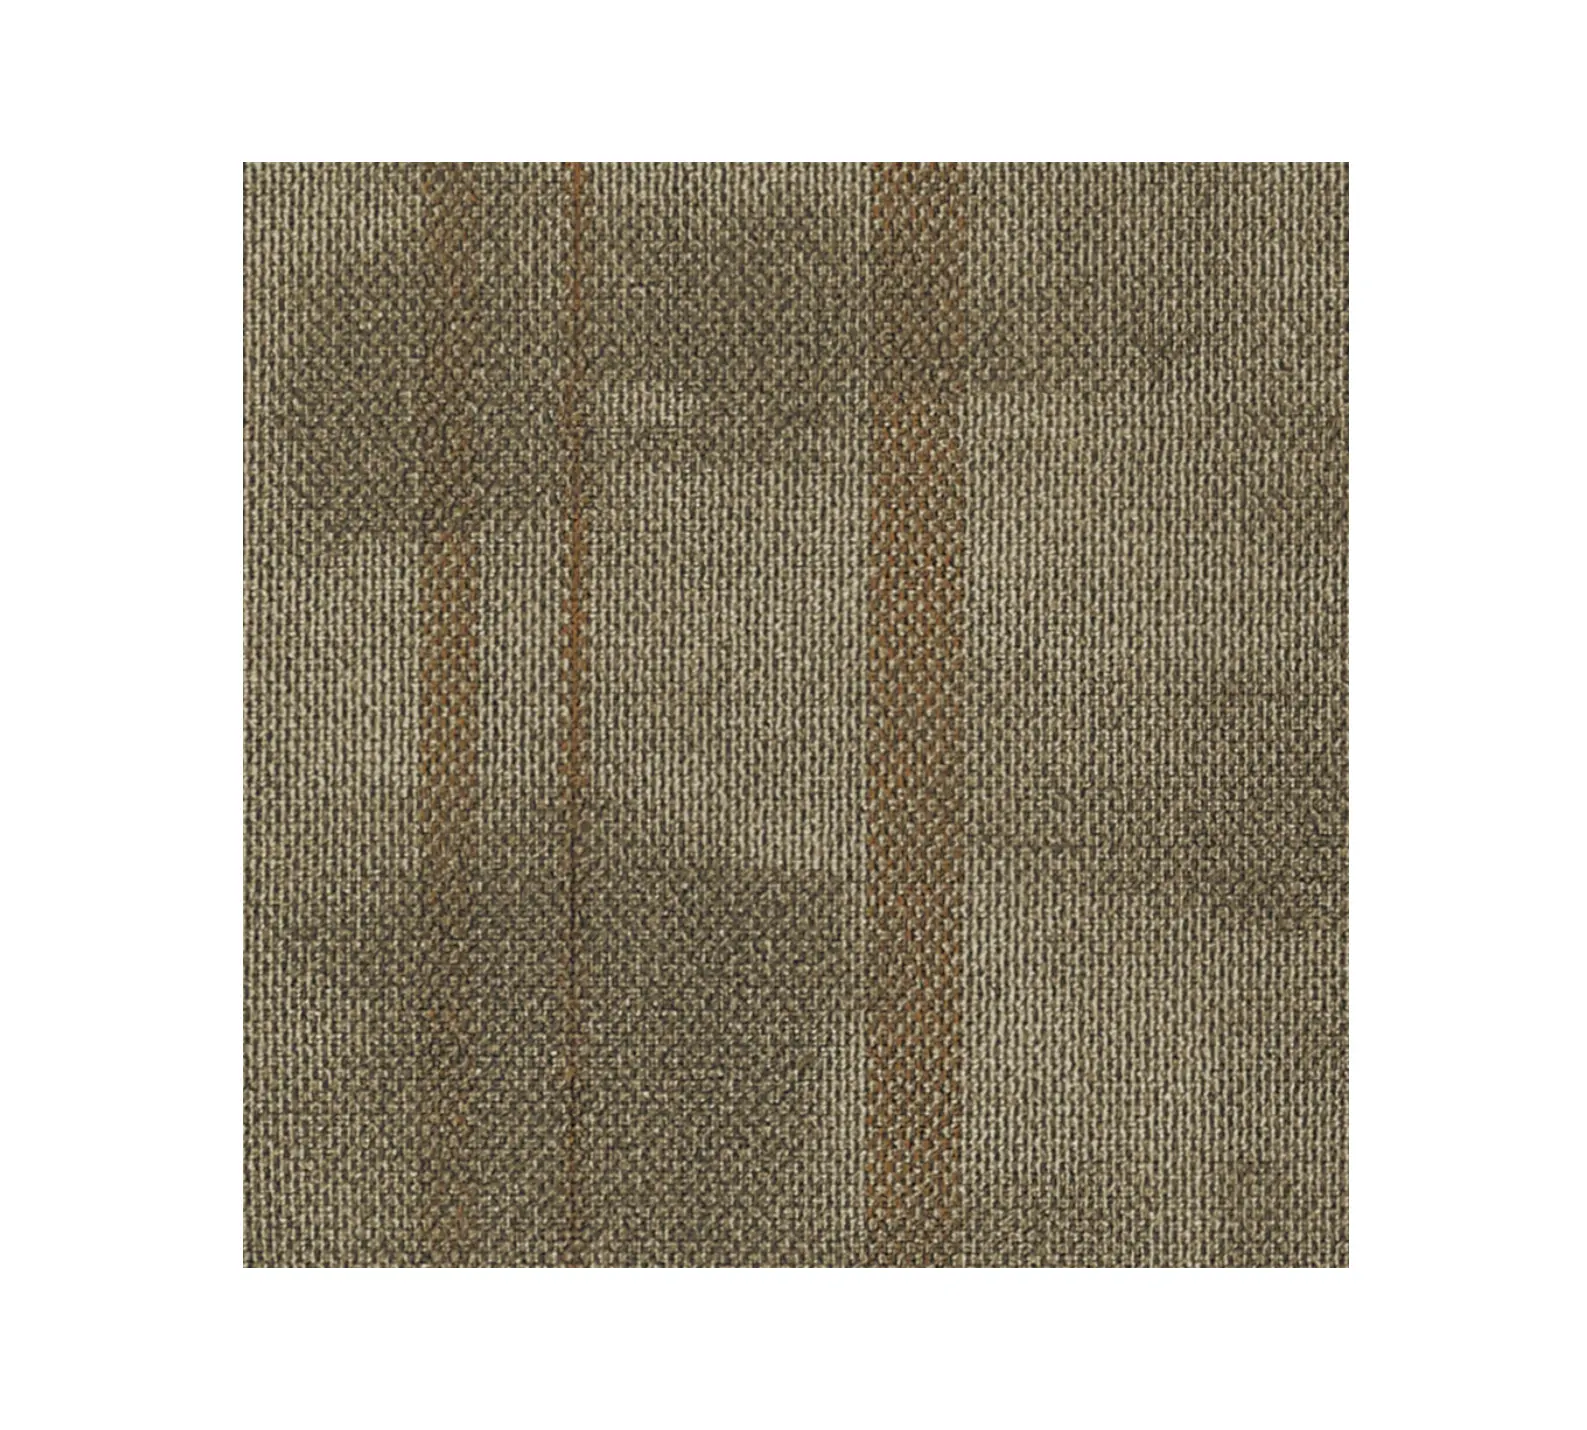 50*50cm Style moderne tapis de sol carrelage haute qualité carré Nylon tapis carrelage pour bureau salle de réunion hôtel